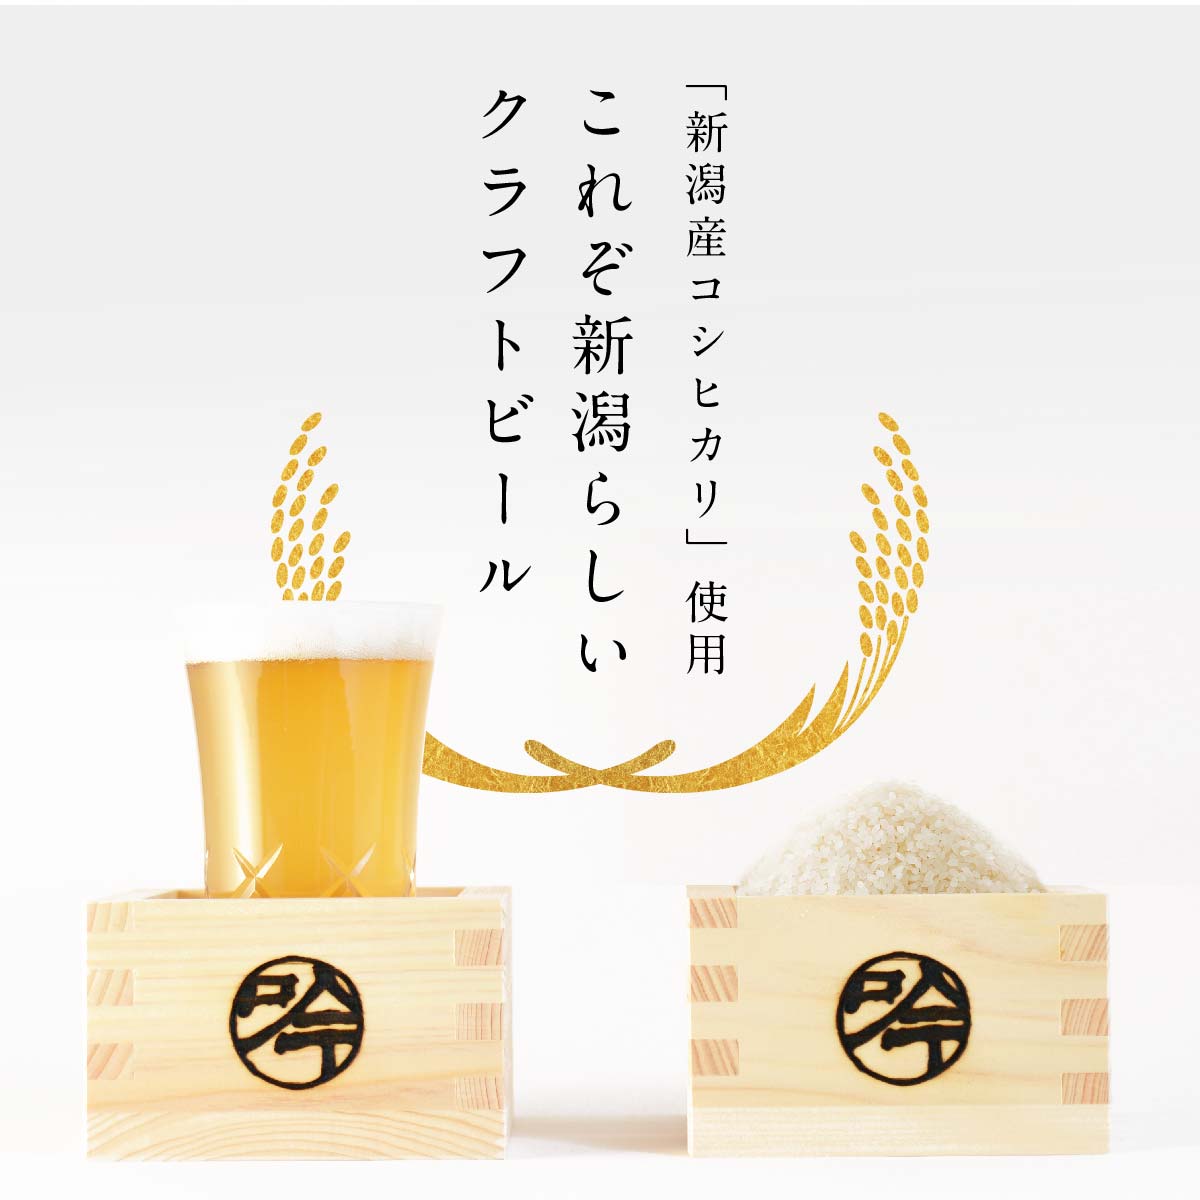 「新潟産コシヒカリ」使用これぞ新潟らしいクラフトビール